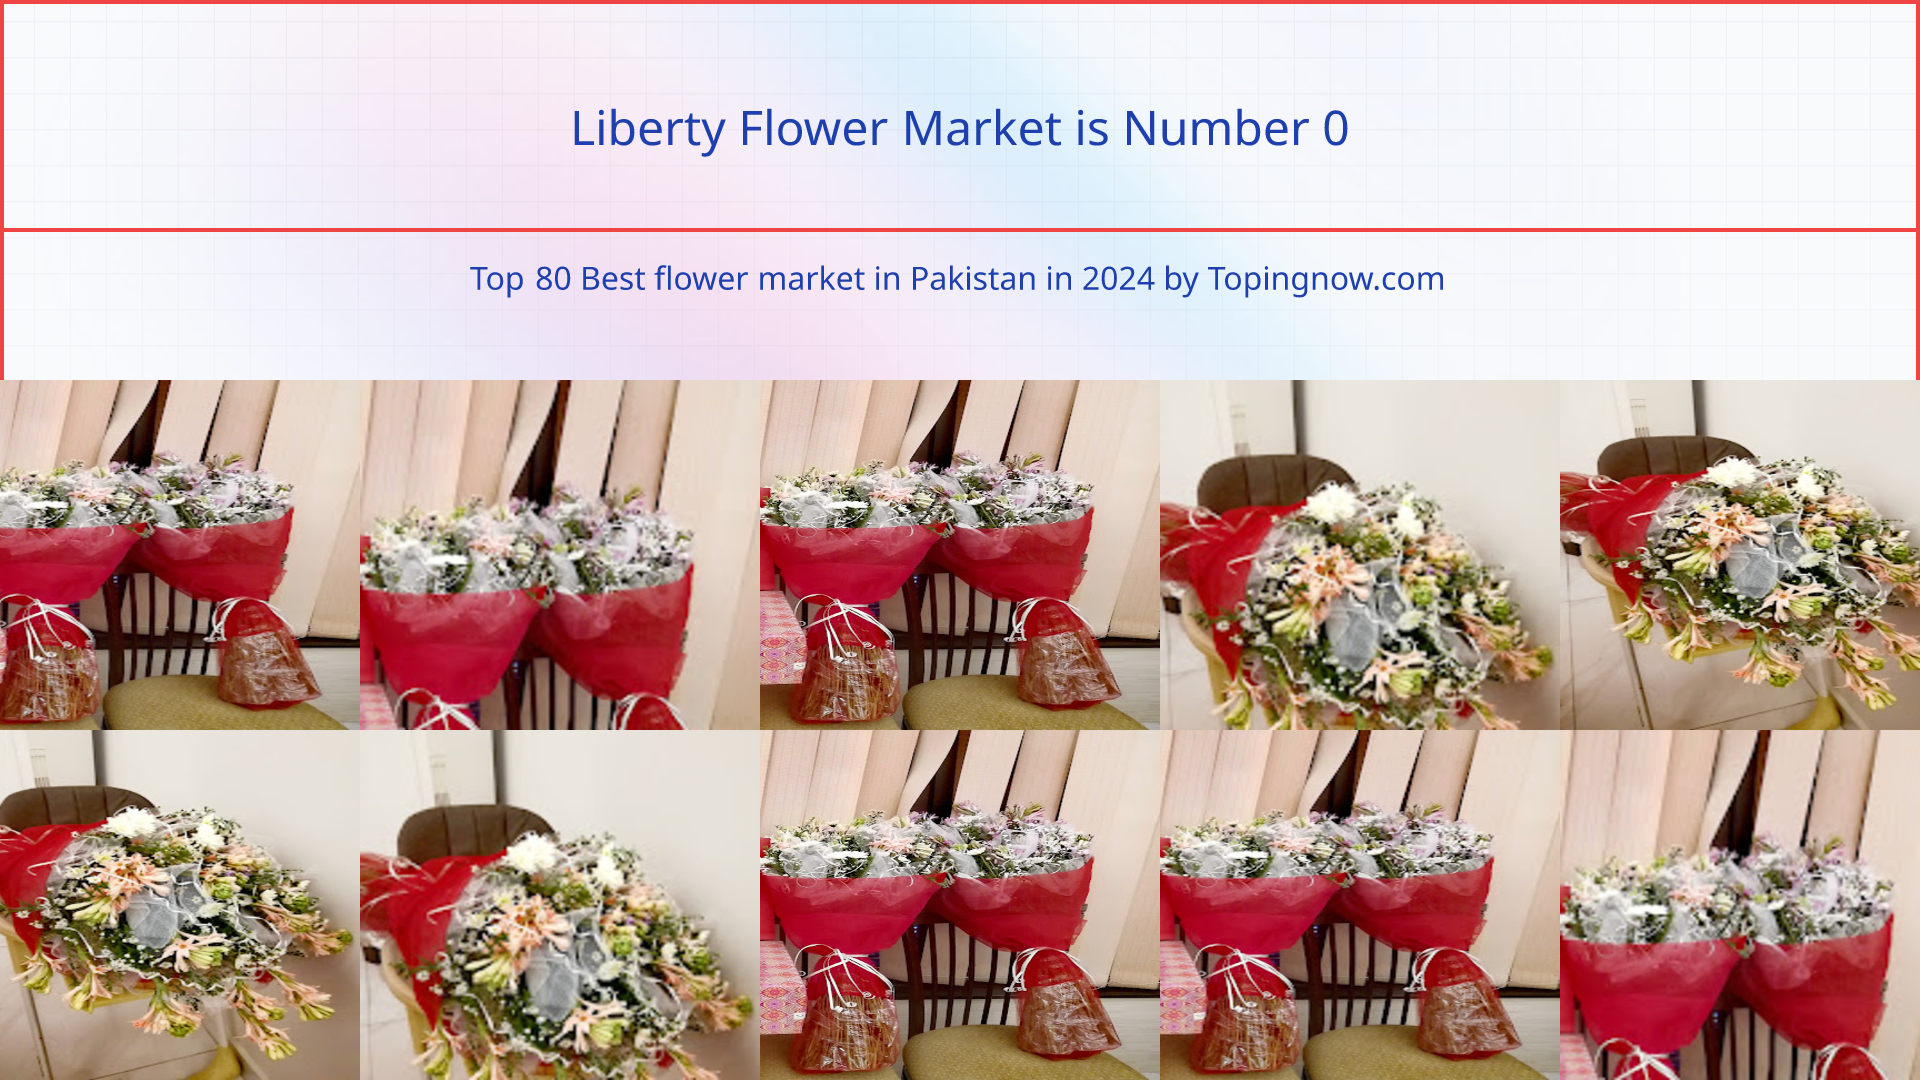 Liberty Flower Market: Top 80 Best flower market in Pakistan in 2024